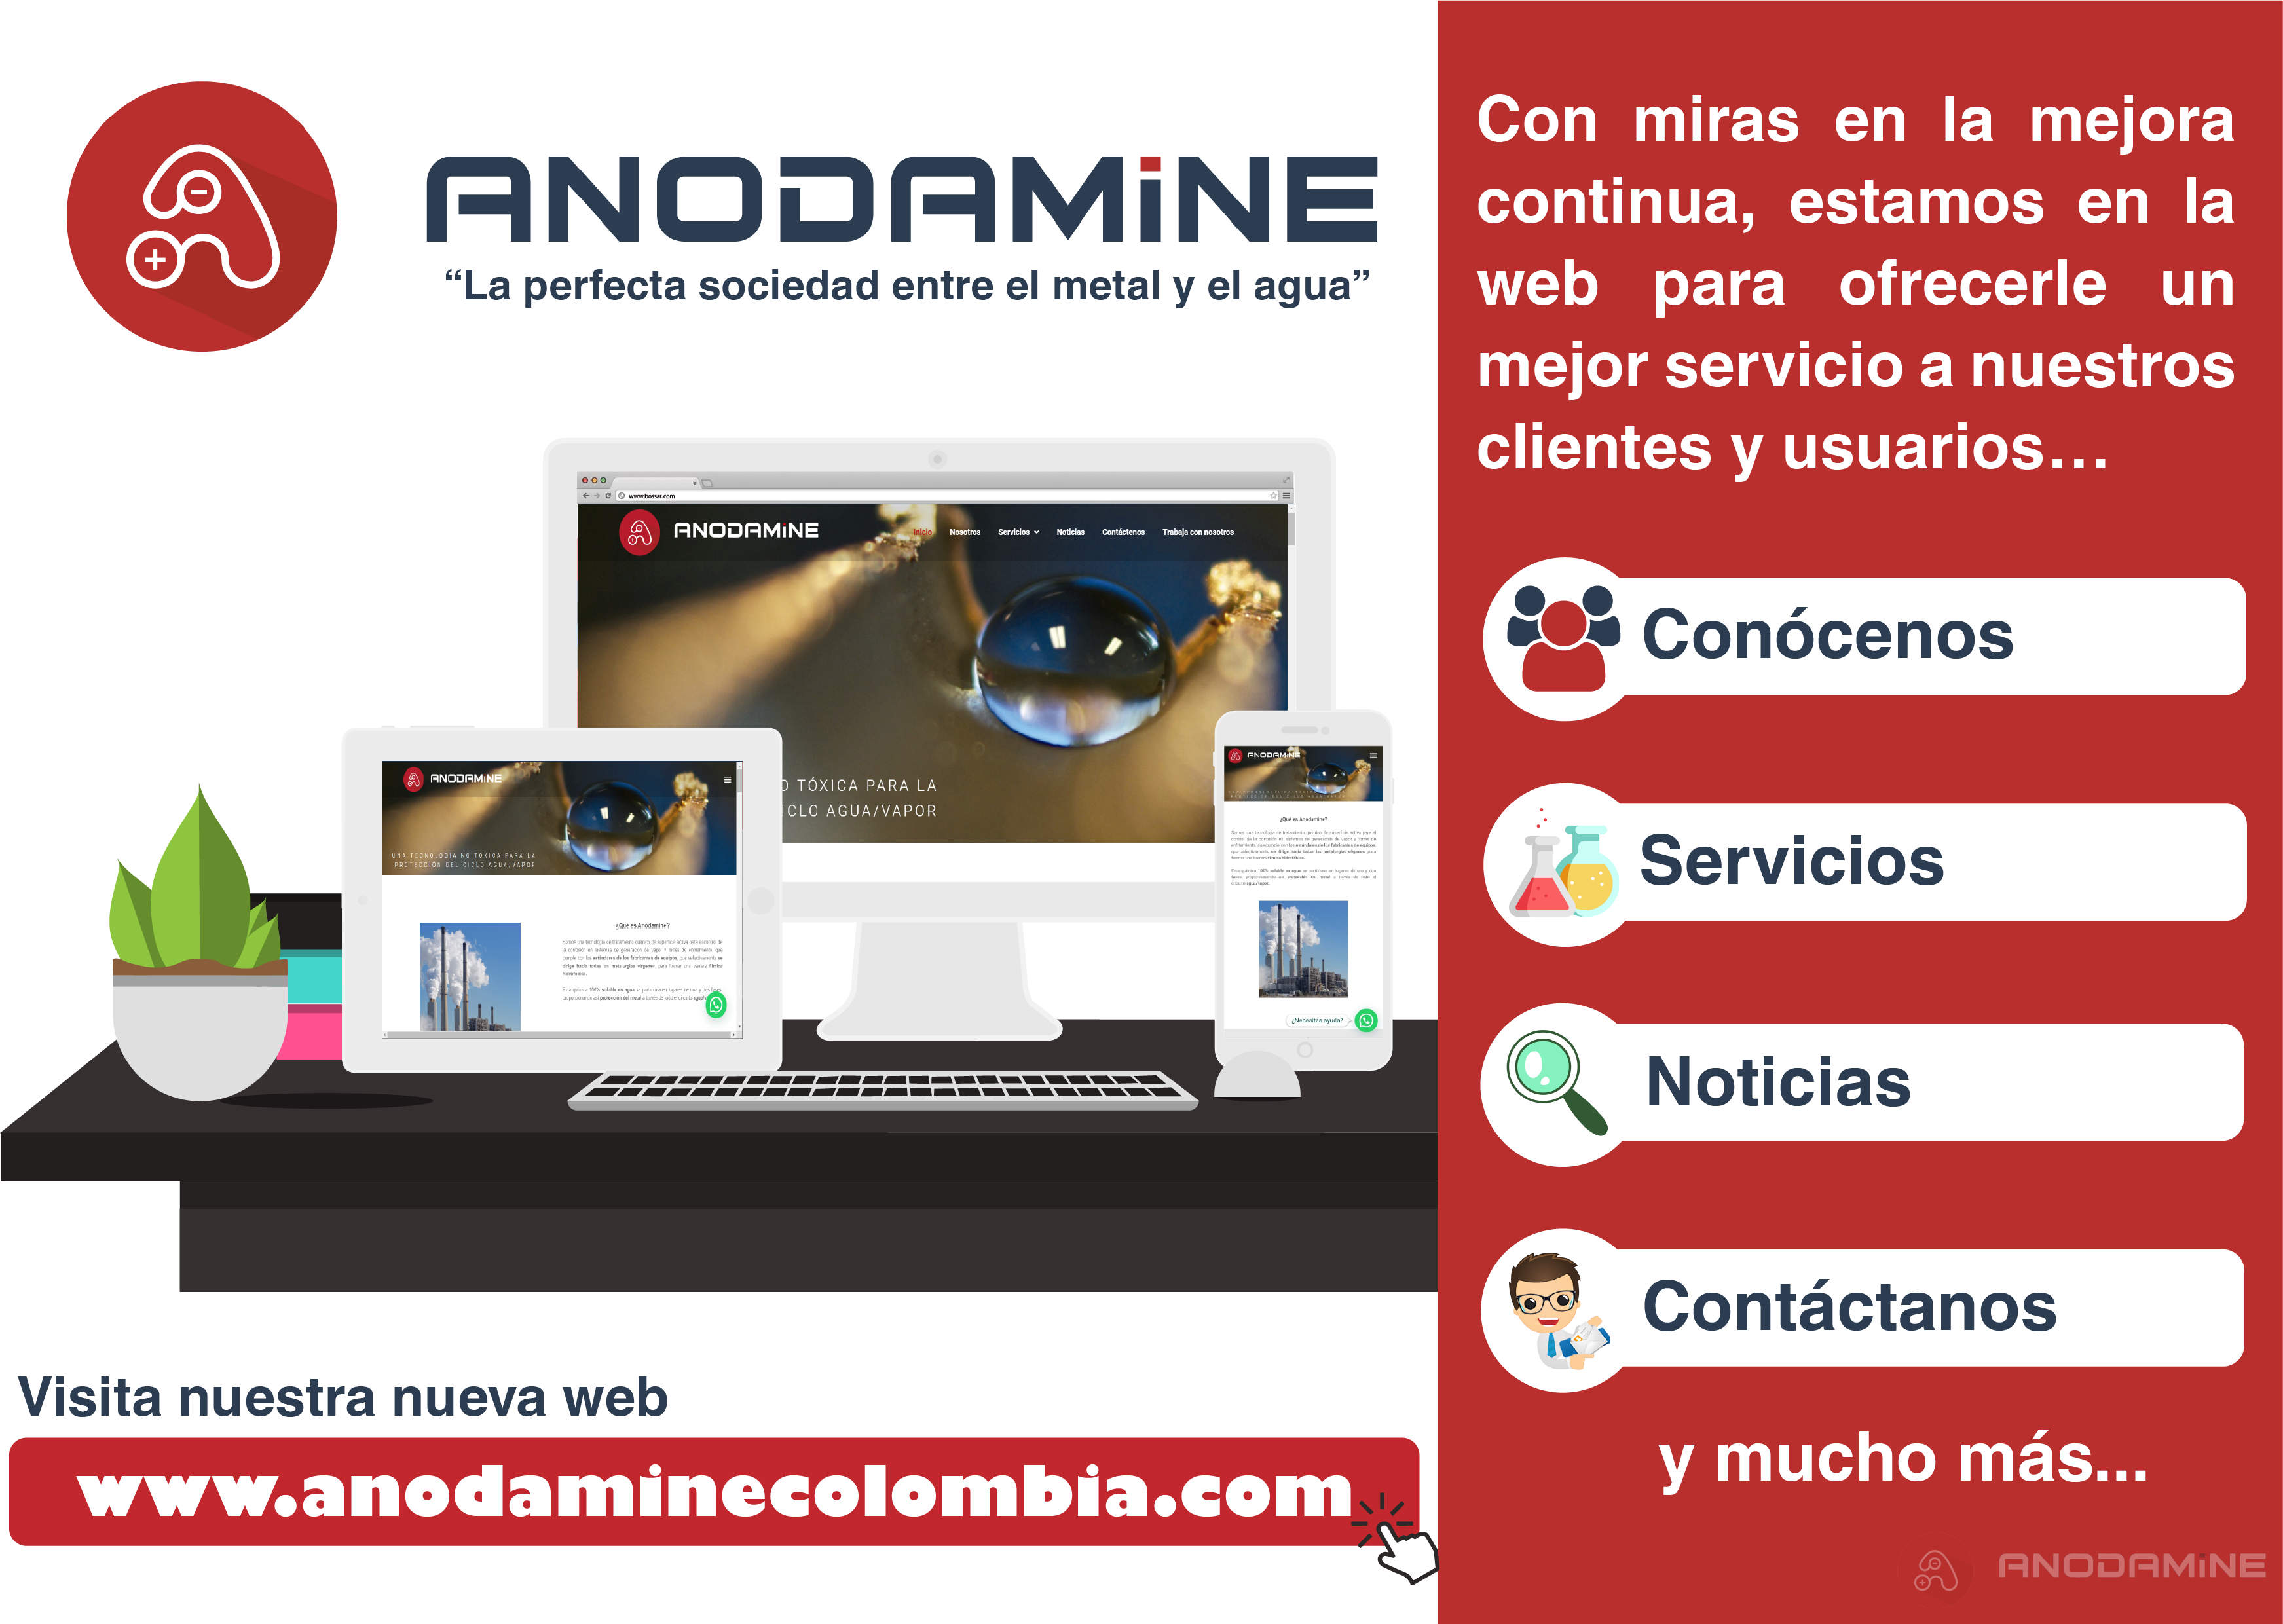 Anodamine Colombia lanza su nueva página